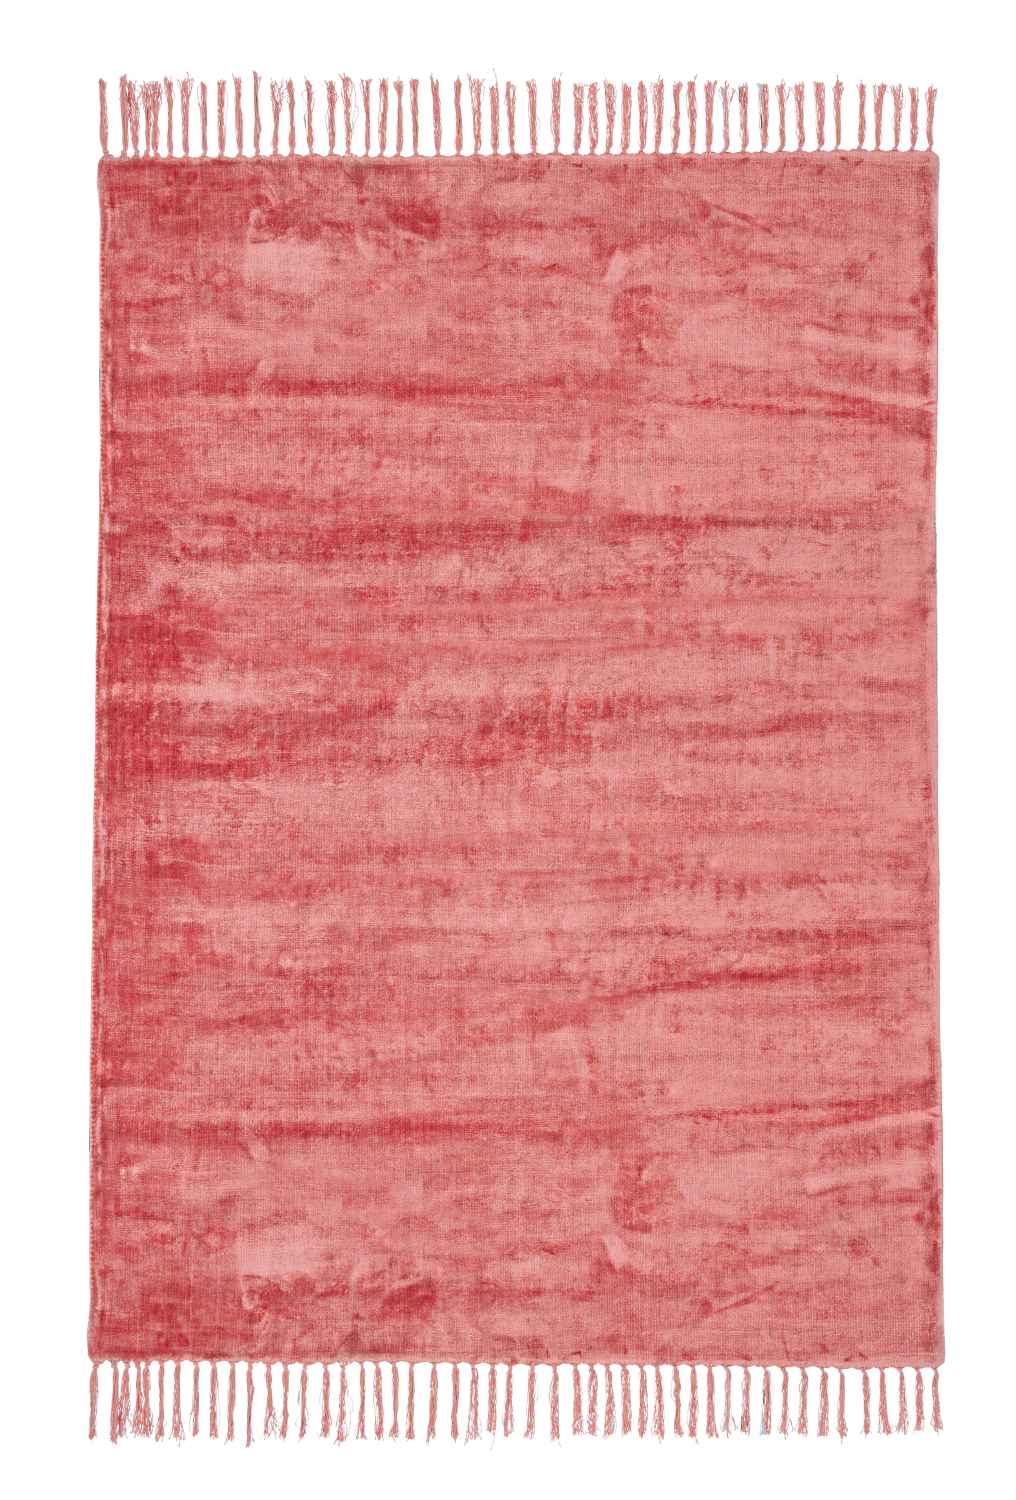 Der Teppich Belize überzeugt mit seinem klassischen Design. Gefertigt wurde die Vorderseite aus 100% Viskose und die Rückseite ist aus 100% Baumwolle. Der Teppich besitzt einen roten Farbton und die Maße von 160x230 cm.